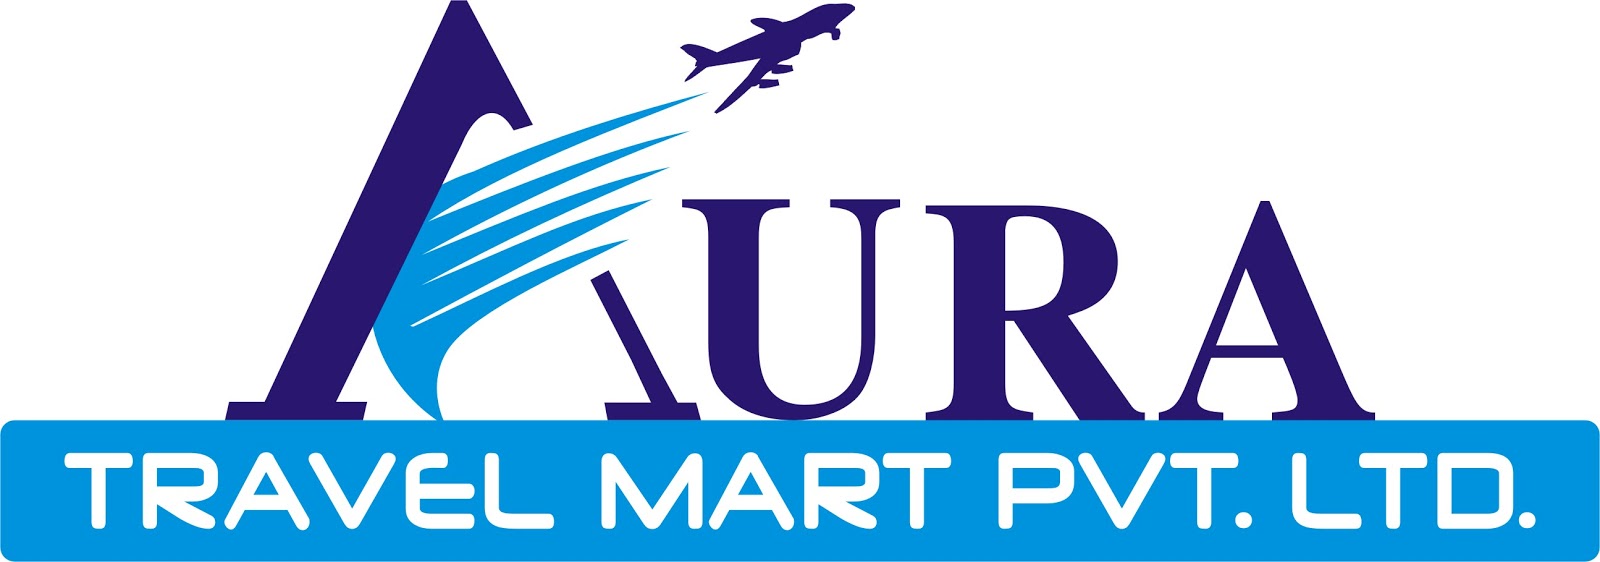 Intui travel. Travel логотип. Travel Mart логотип. A Travel Company логотип. Путешествие лого.